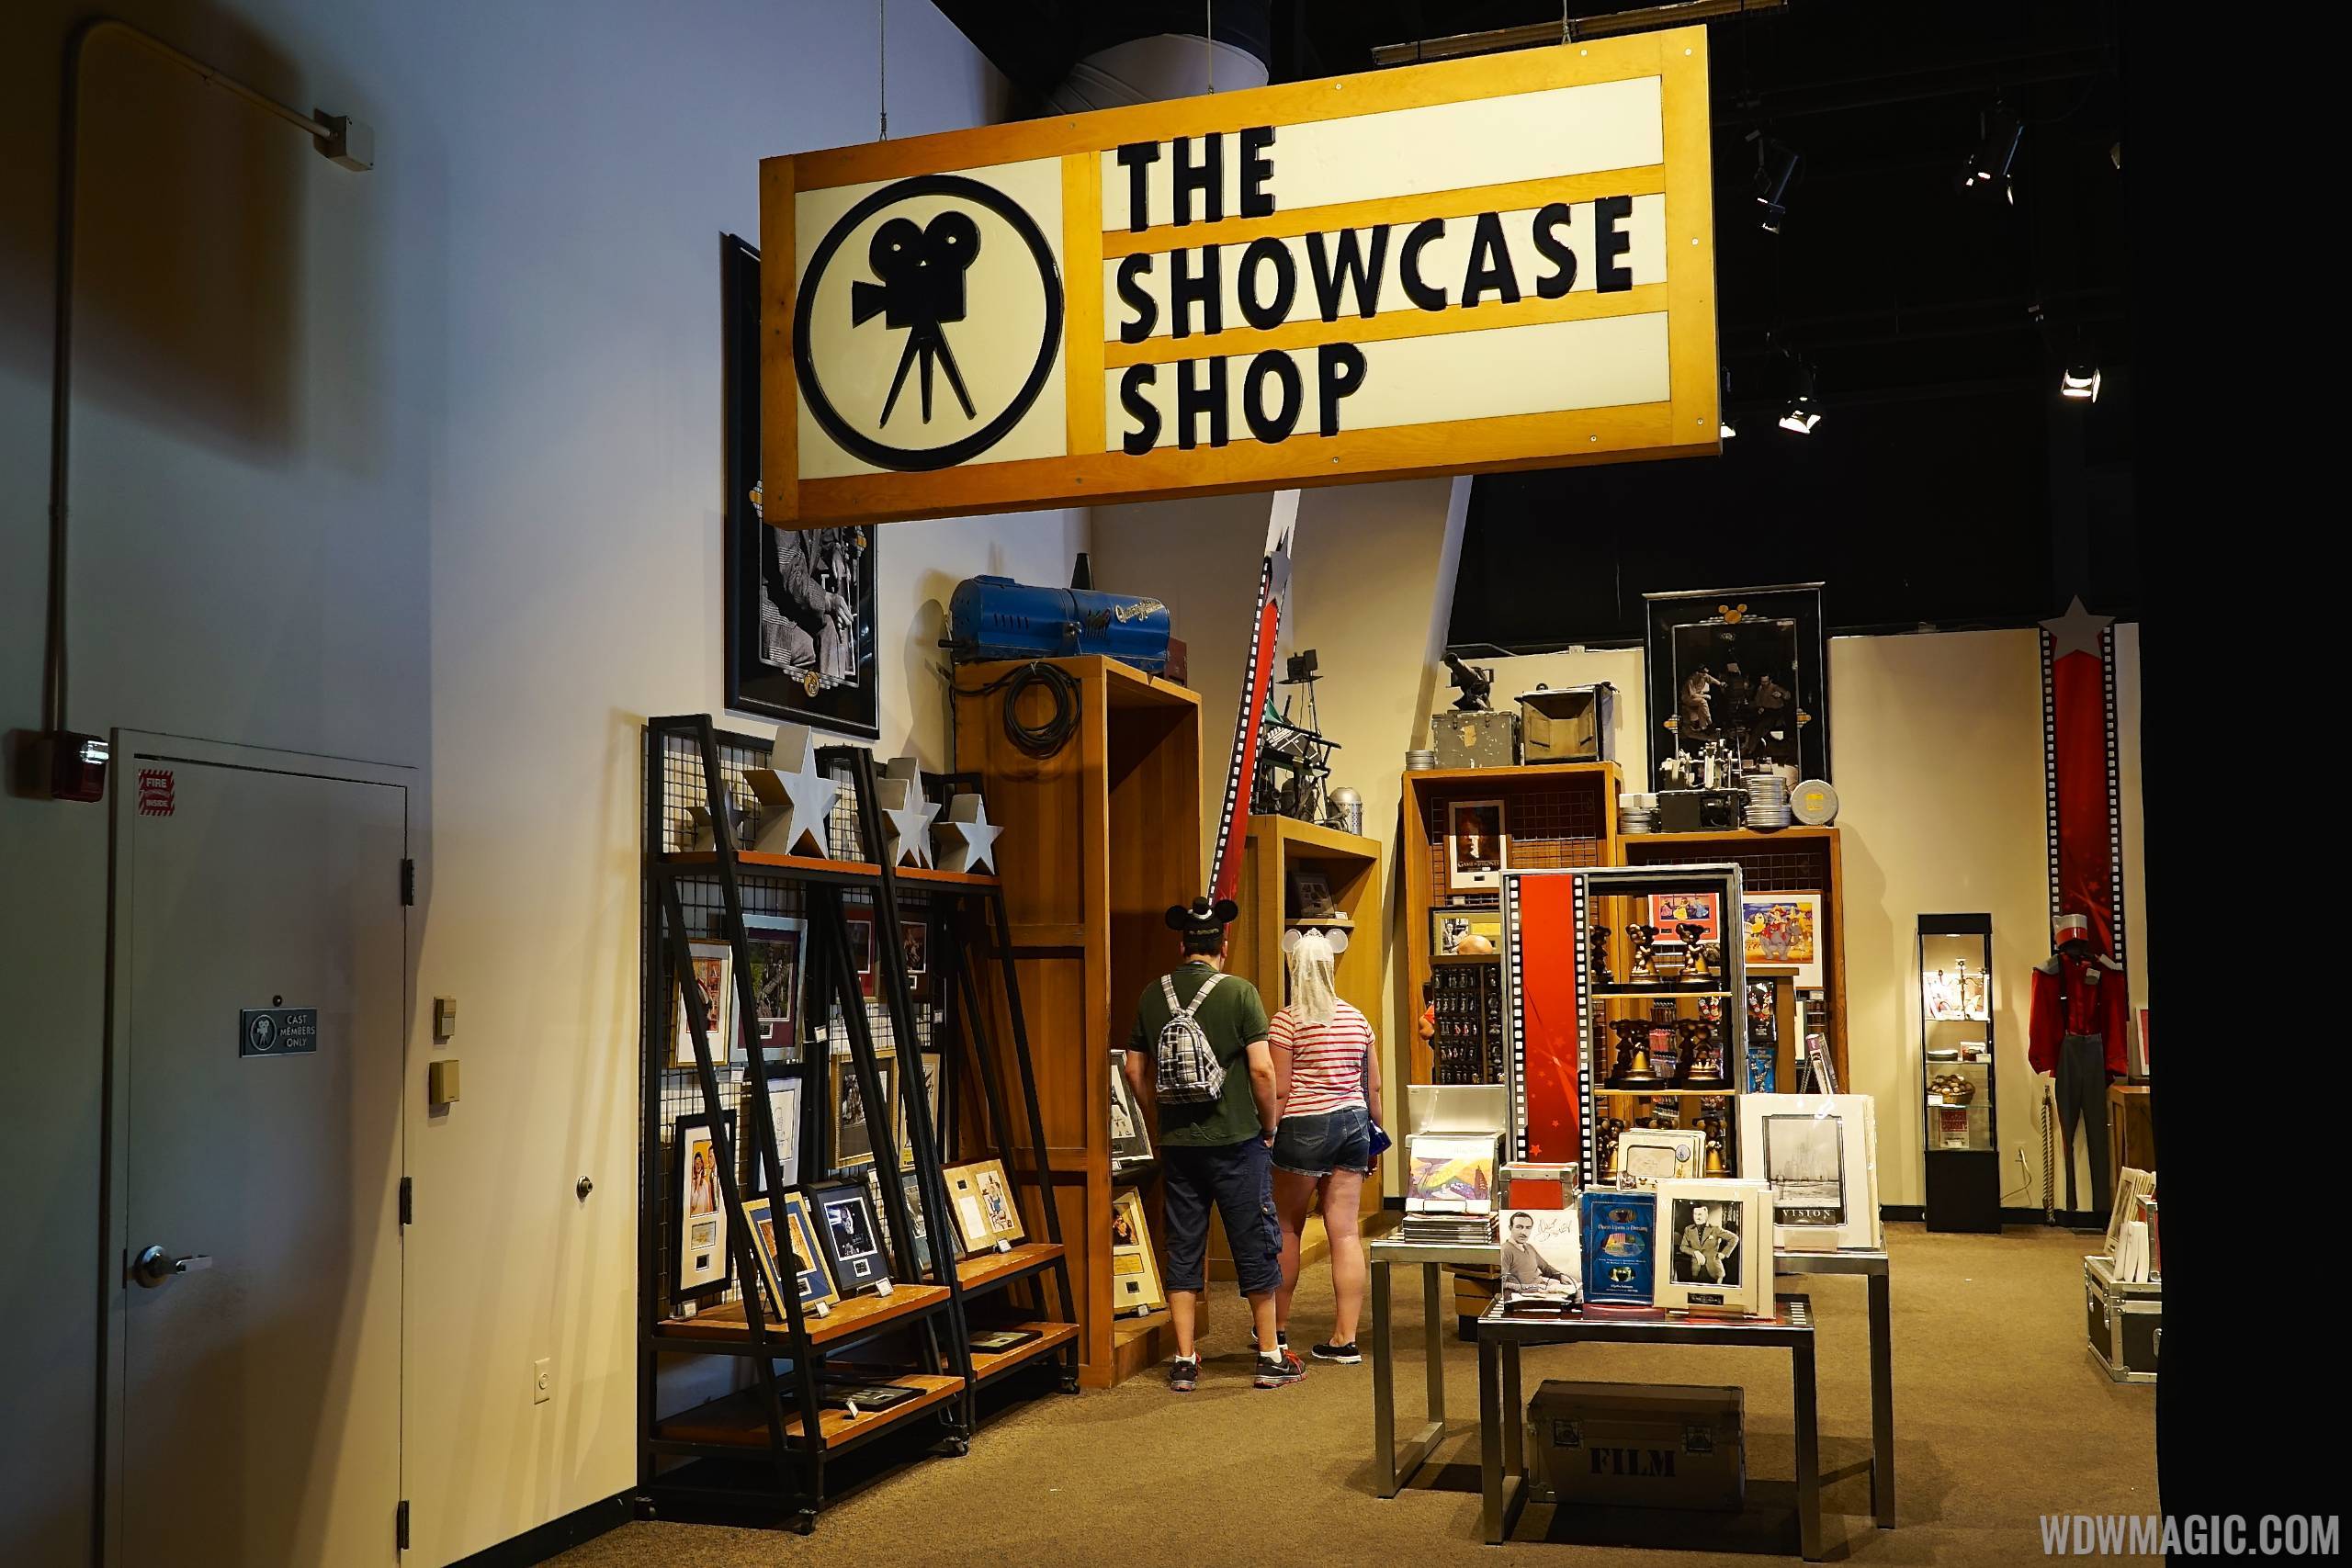 American Film Institute exhibit - The Showcase Shop